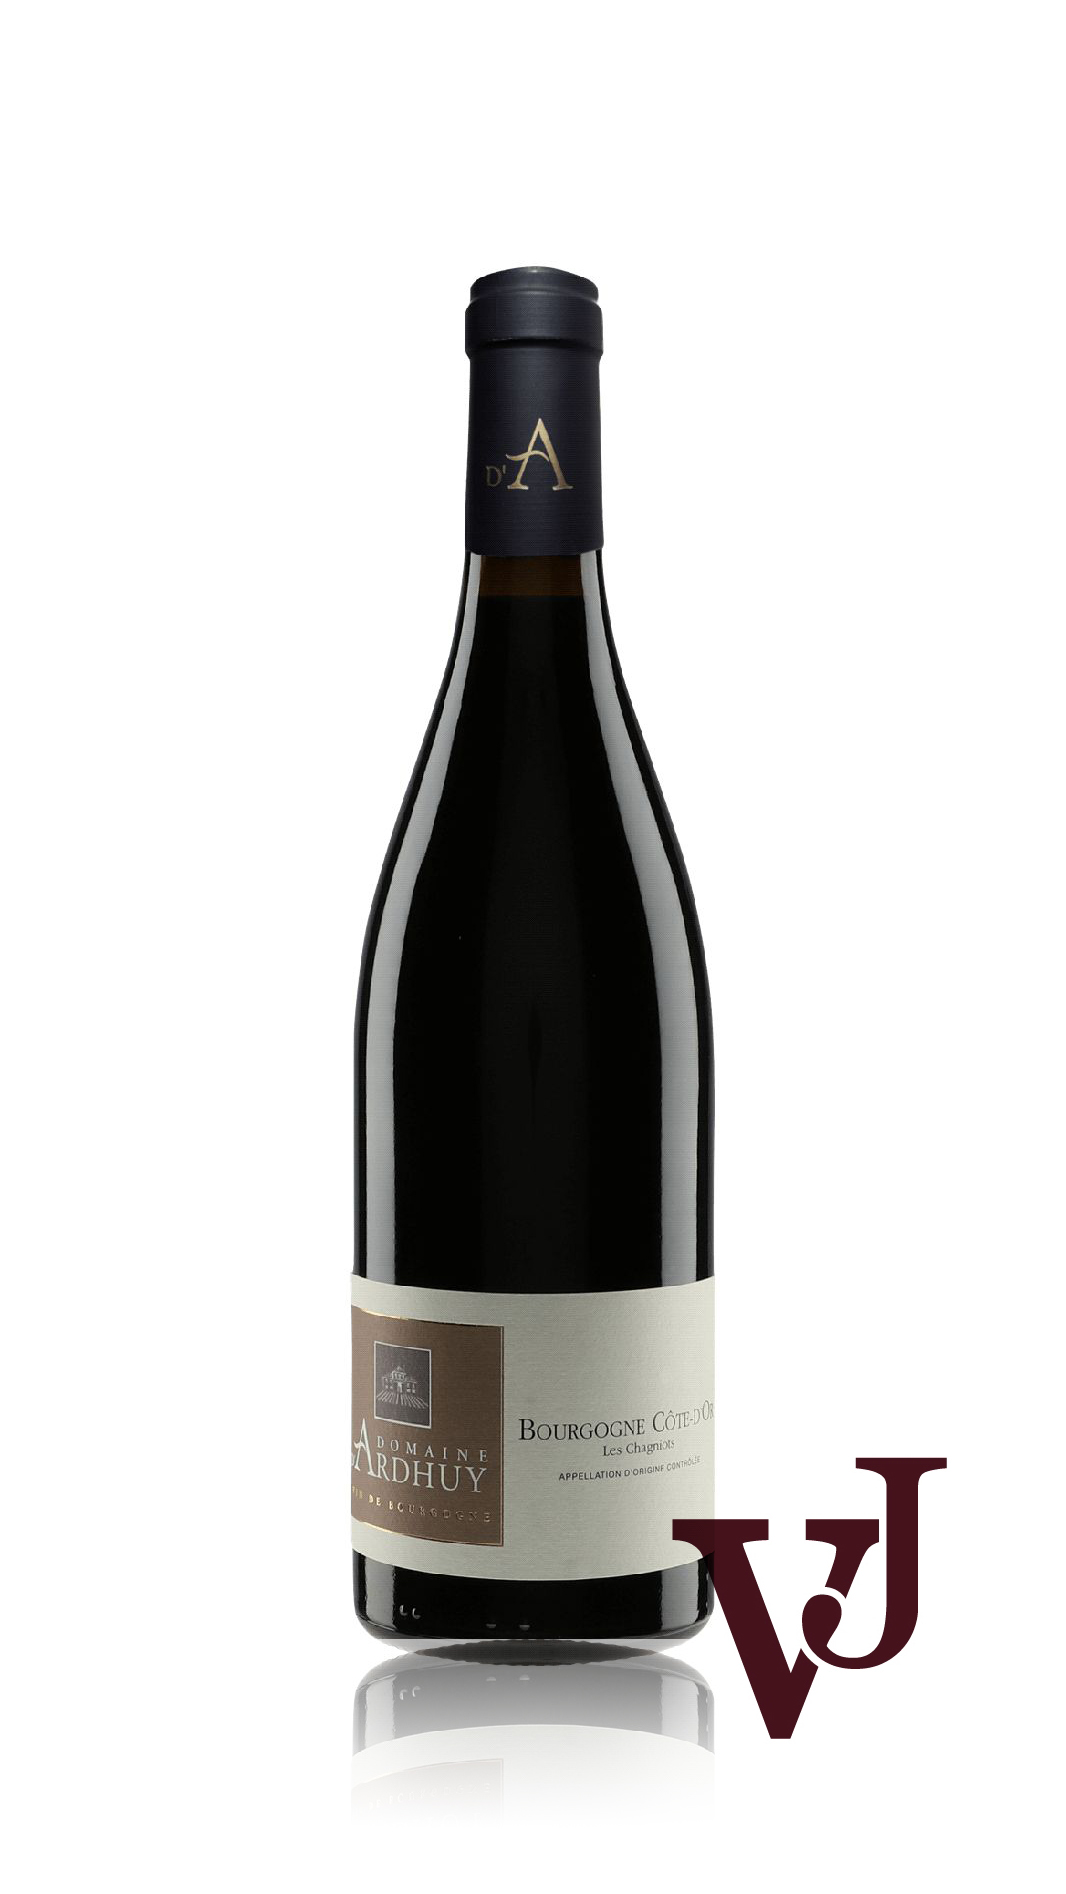 Rött Vin - Domaine D'Ardhuy Les Chagniots artikel nummer 7834901 från producenten Domaine d'Ardhuy från området Frankrike